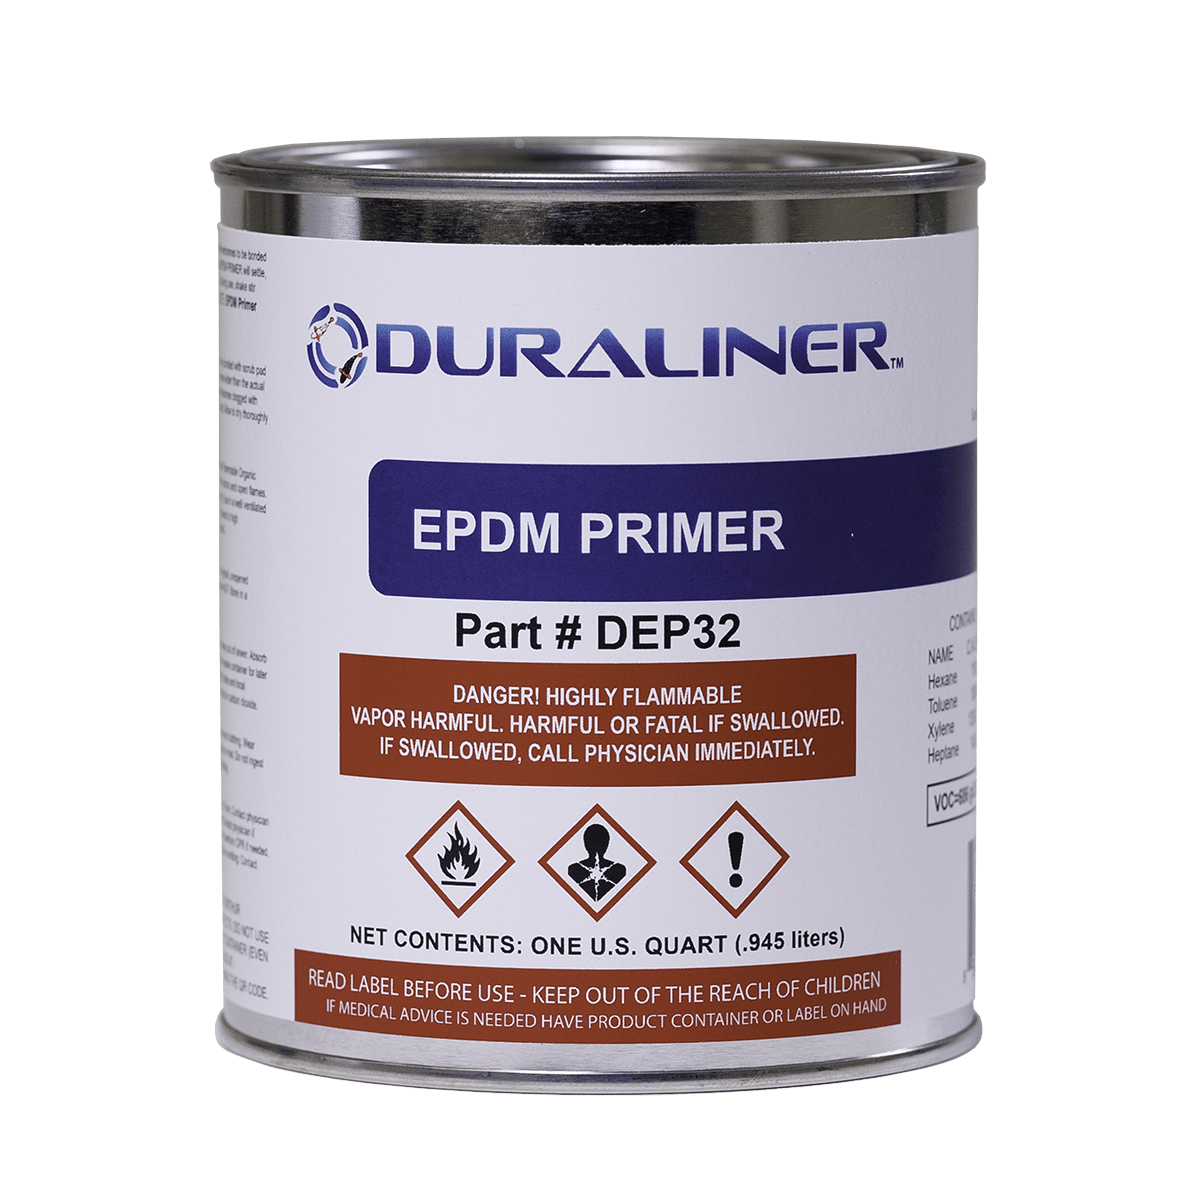 EasyPro Pond Liner and Accessories EPDM Primer- 1 qt. DuraLiner EPDM Primer